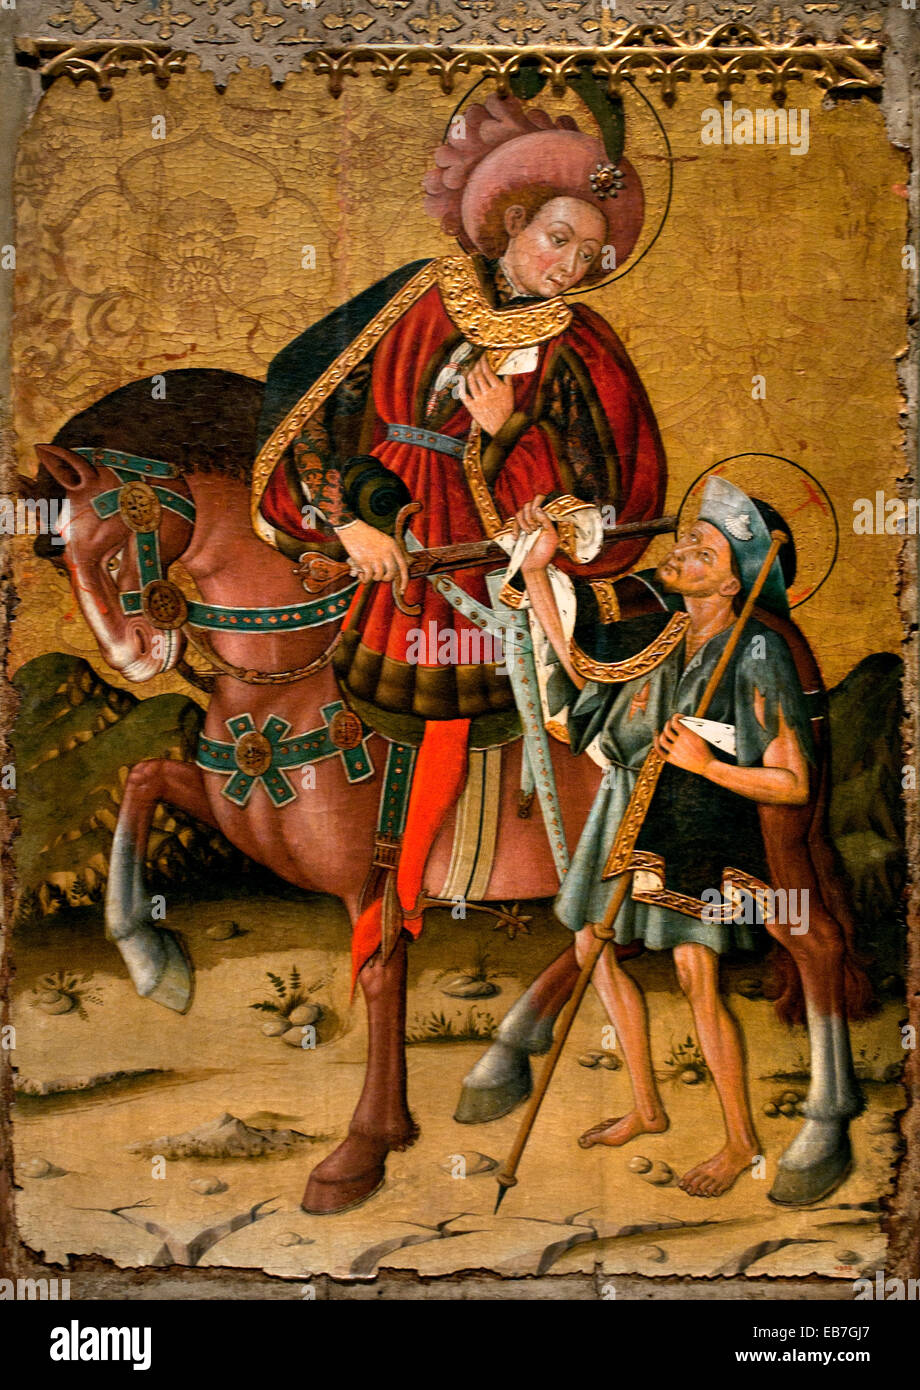 Saint-Martin seinen Mantel von Blasco de Grañén dokumentierte in Zaragoza, 1422-1459 Spanien Spanisch mittelalterlichen gotischen Kunst teilen Stockfoto